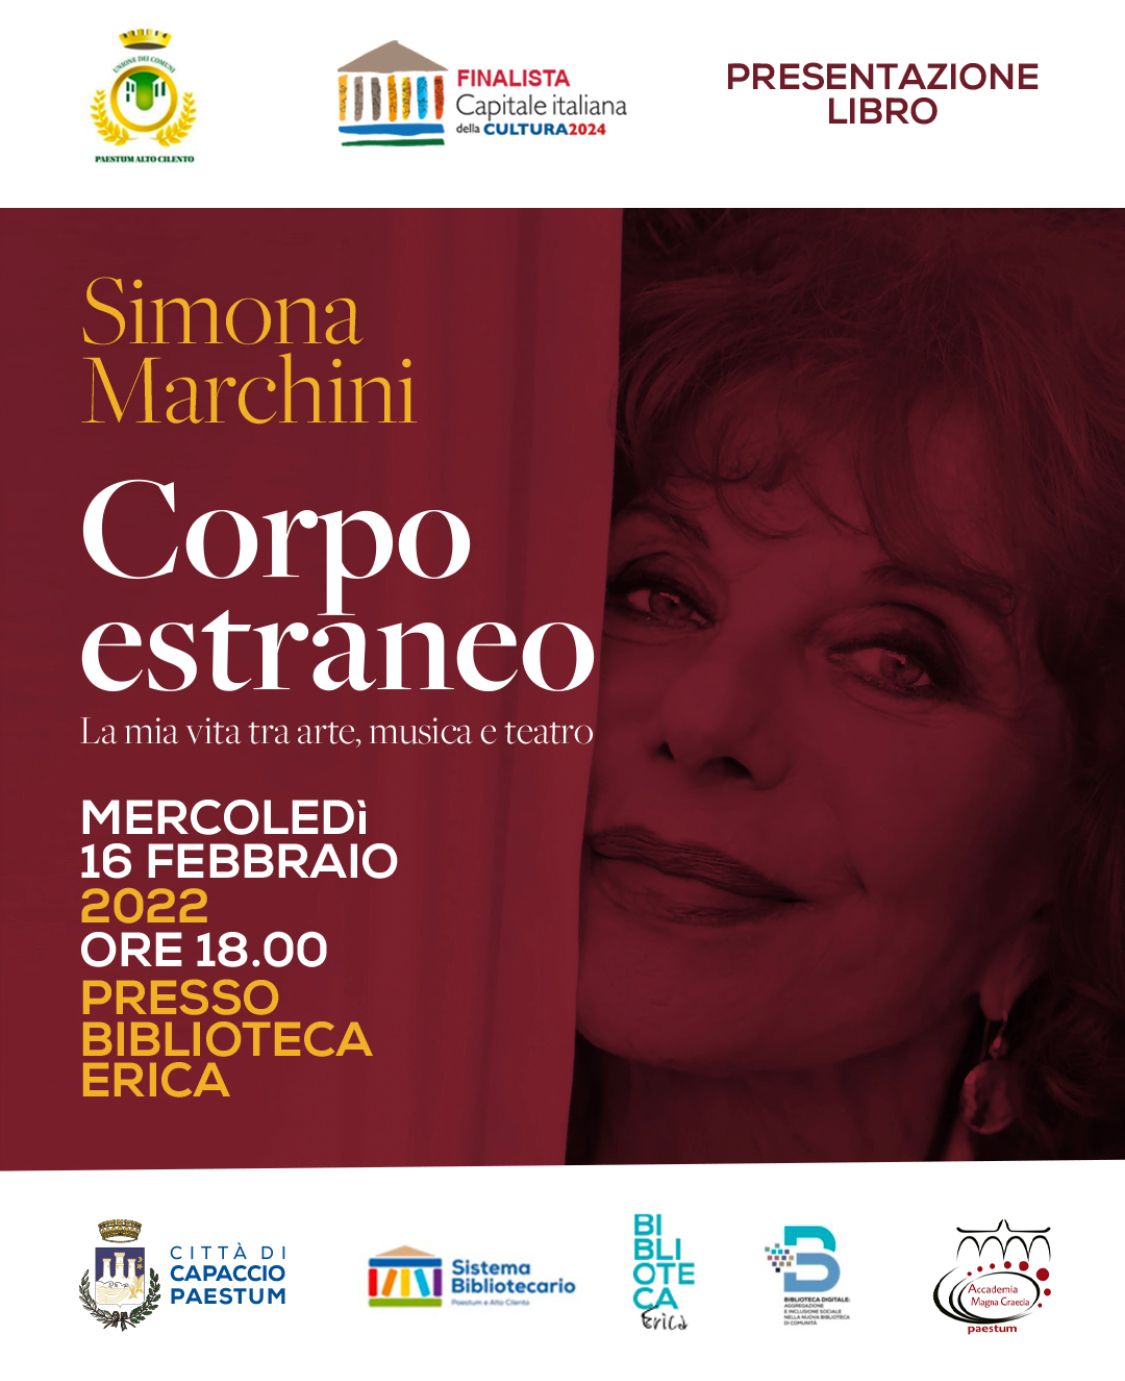 Capaccio Paestum: attrice Simona Marchini presenta suo libro “Corpo Estraneo. La mia vita tra arte, musica e teatro”